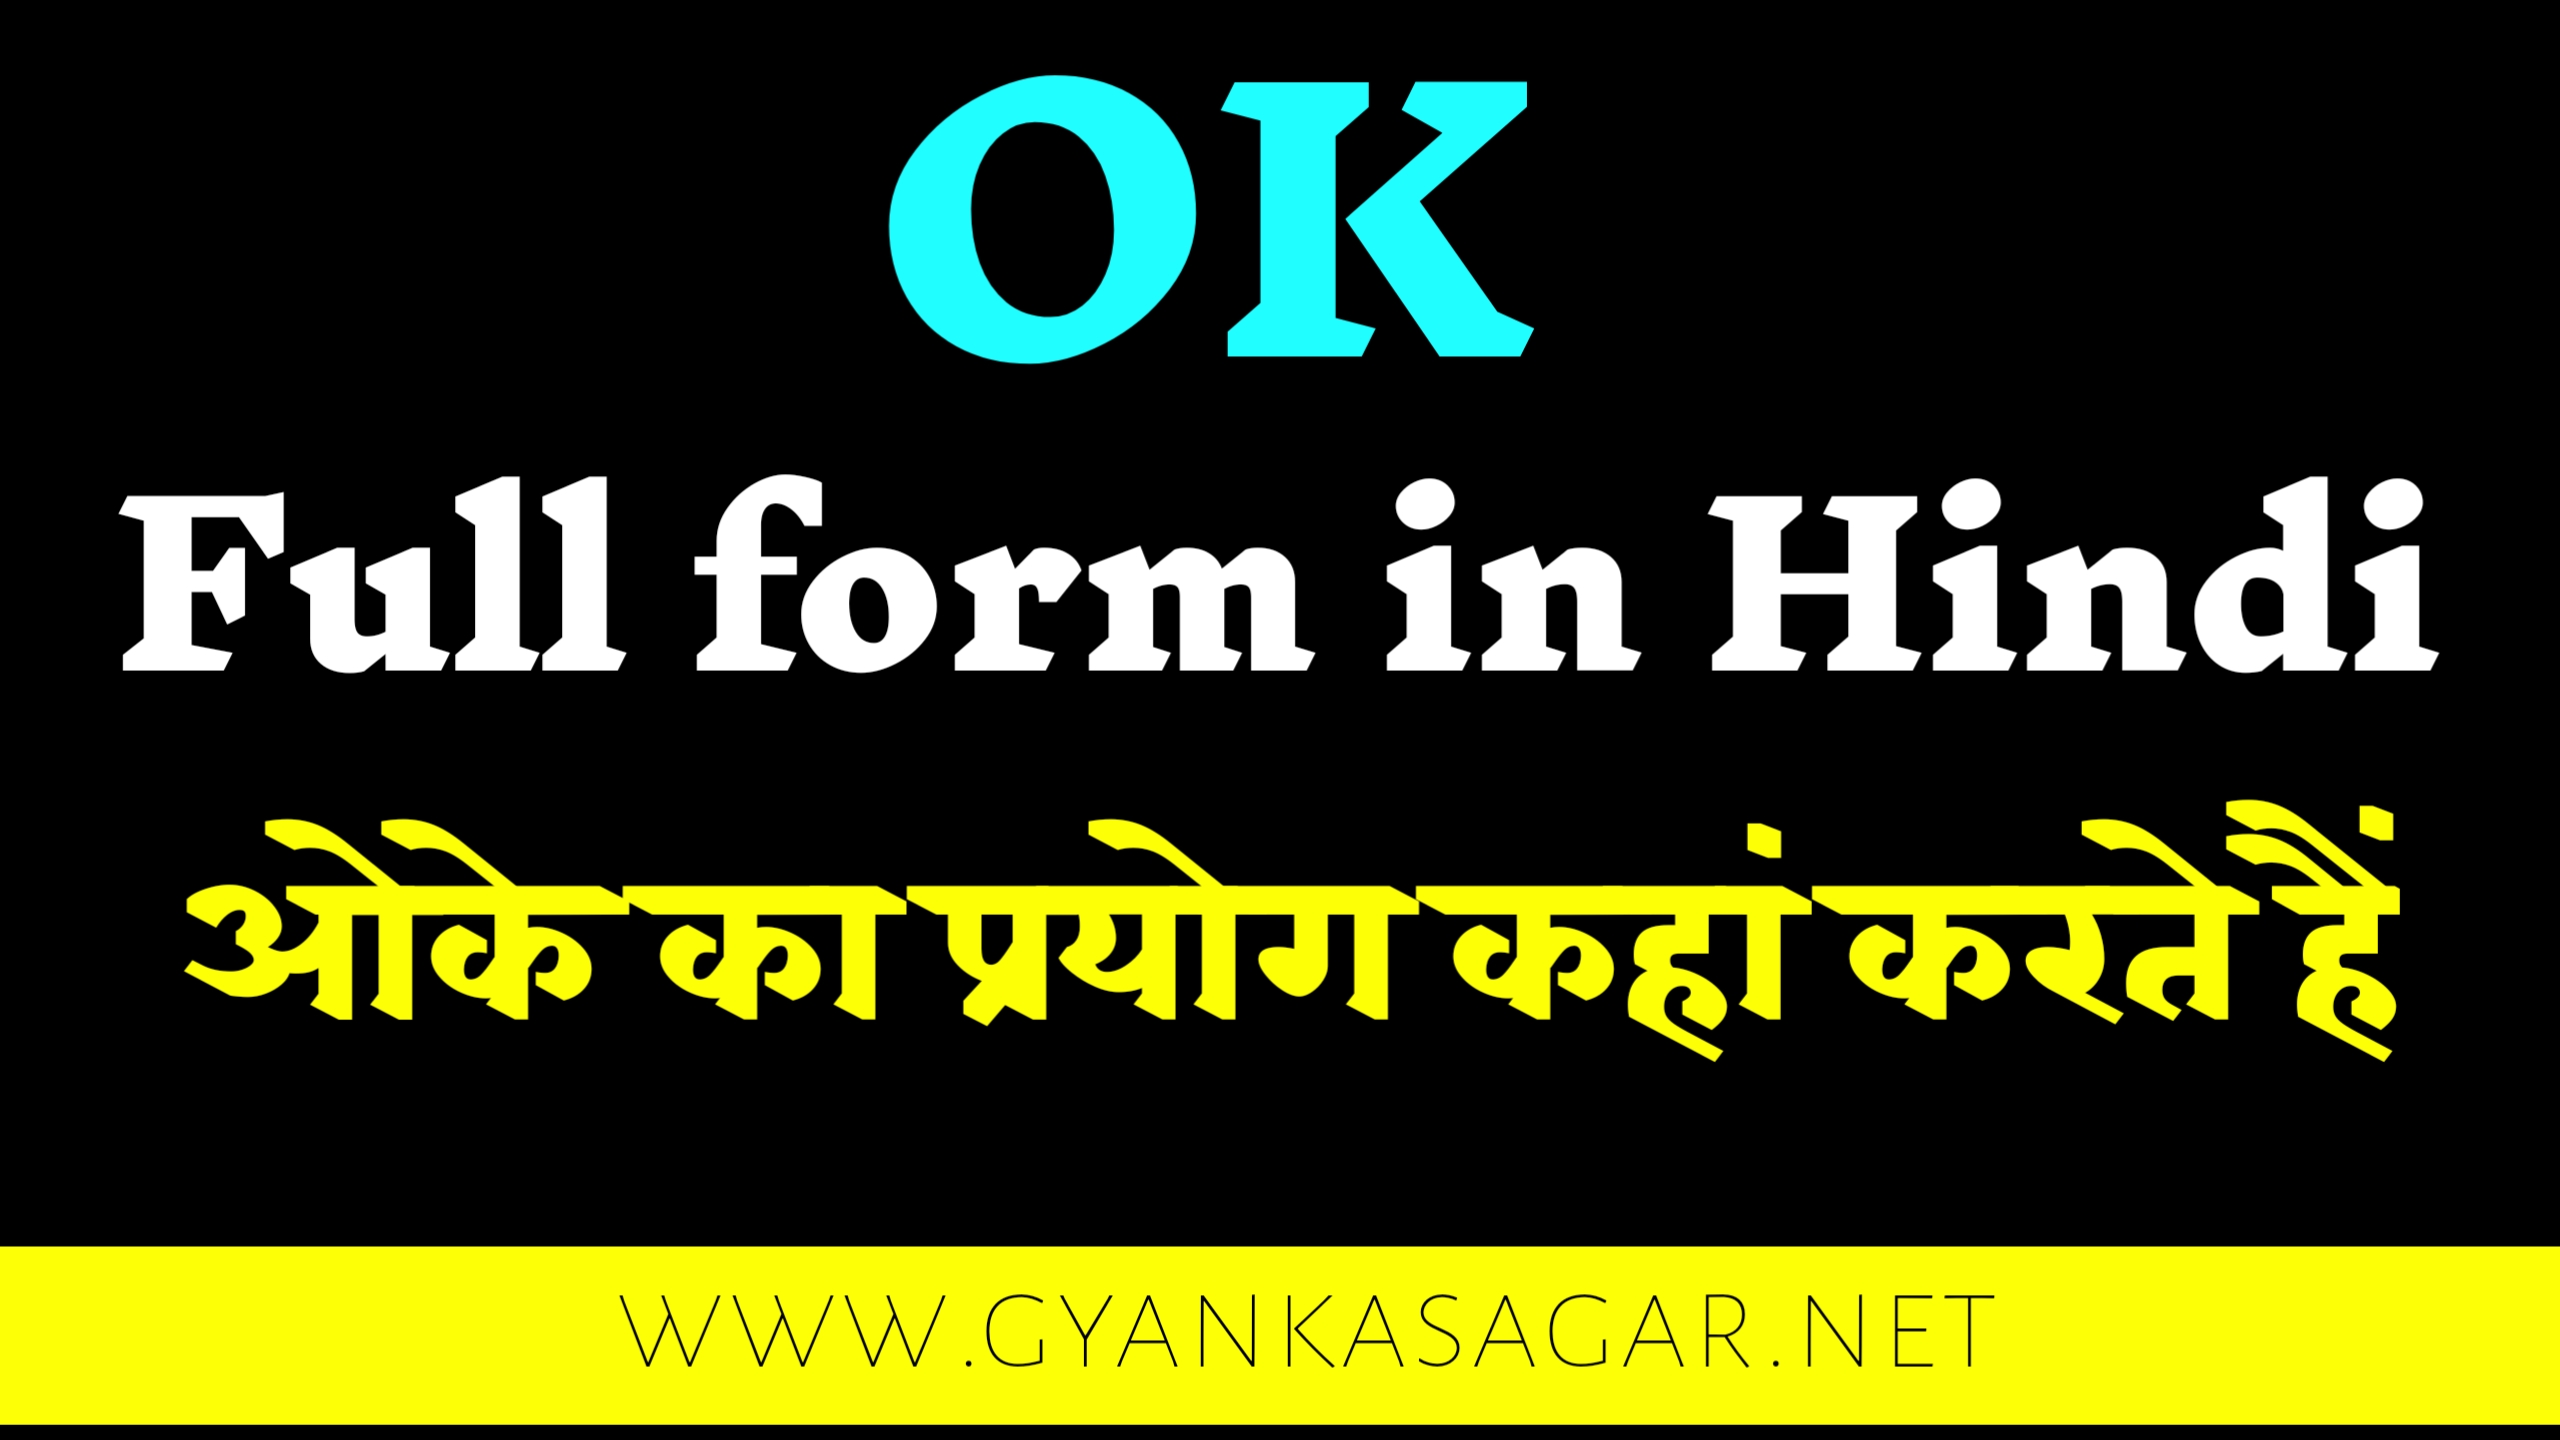 OK full form in hindi | हर बात पर ओके क्यों बोला जाता है | ओके की फुल फॉर्म क्या है, ओके का पूरा नाम क्या होता है , ओके कब प्रयोग बार-बार क्यों किया जाता है , हर बात में ओके को क्यों बोला जाता है , ओके का जन्म कब हुआ